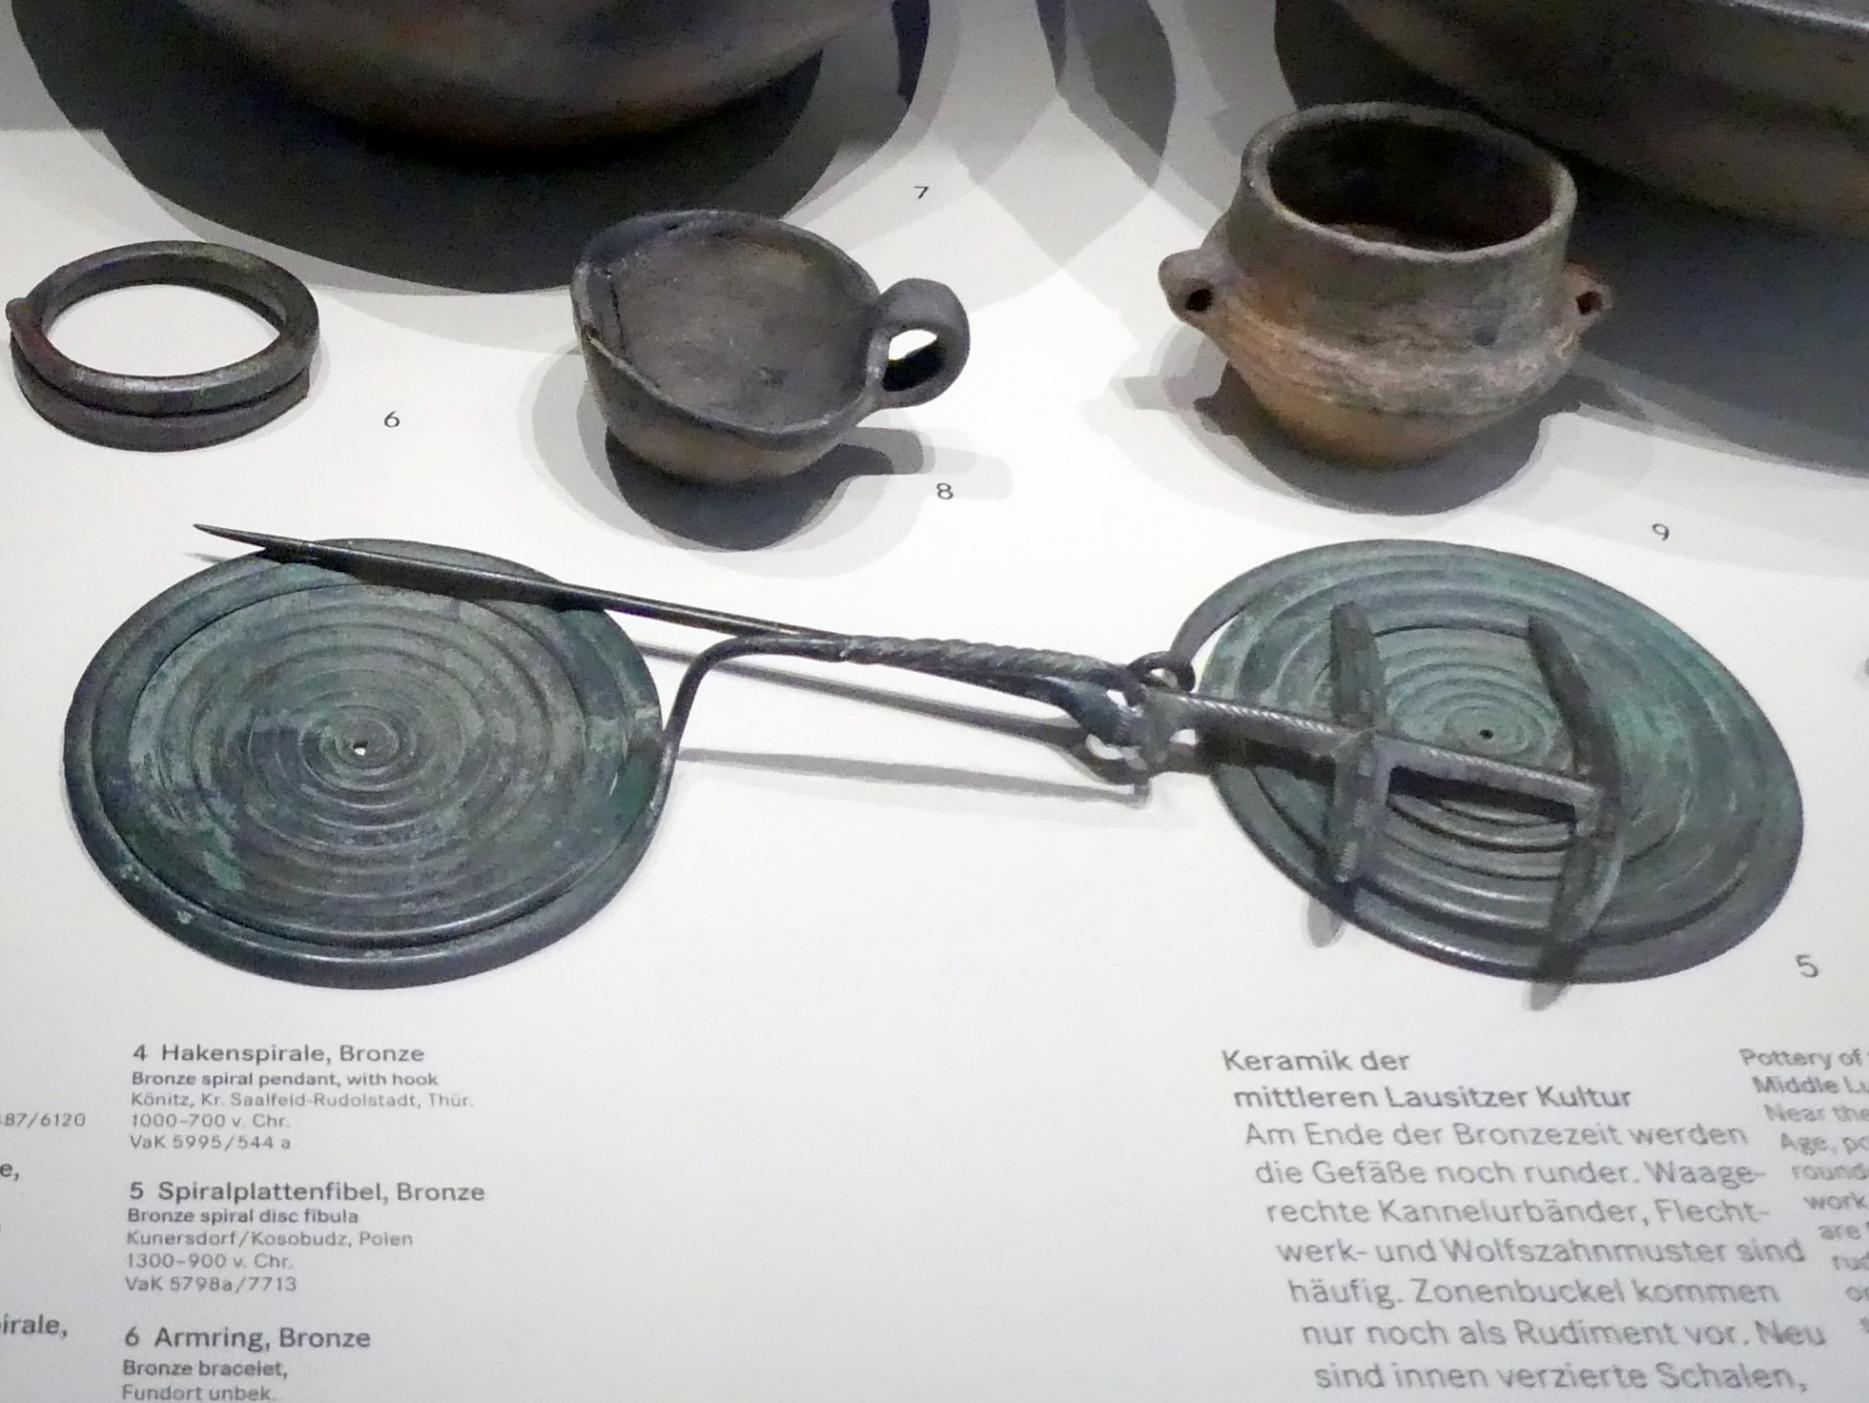 Spiralplattenfibel, 1300 - 900 v. Chr., Bild 1/2